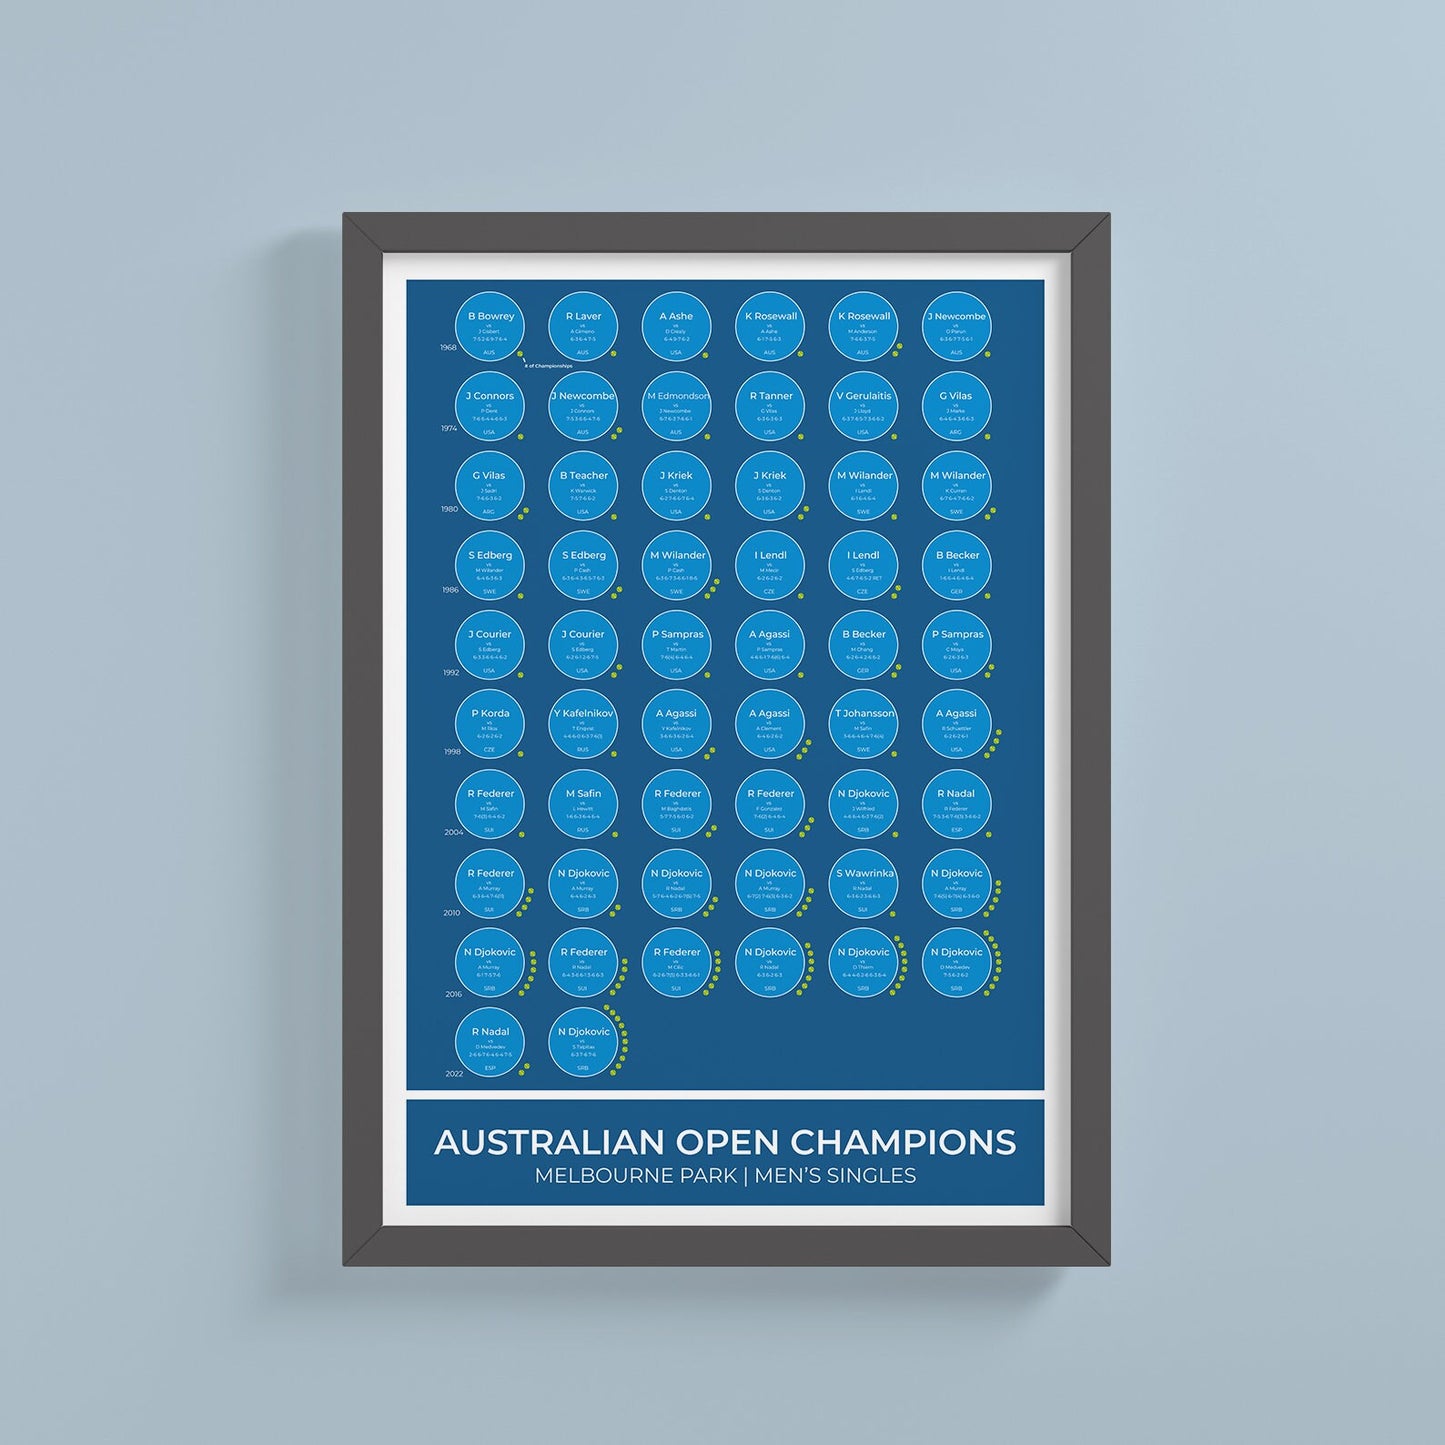 Champions du Grand Chelem de l'Open d'Australie de tennis 